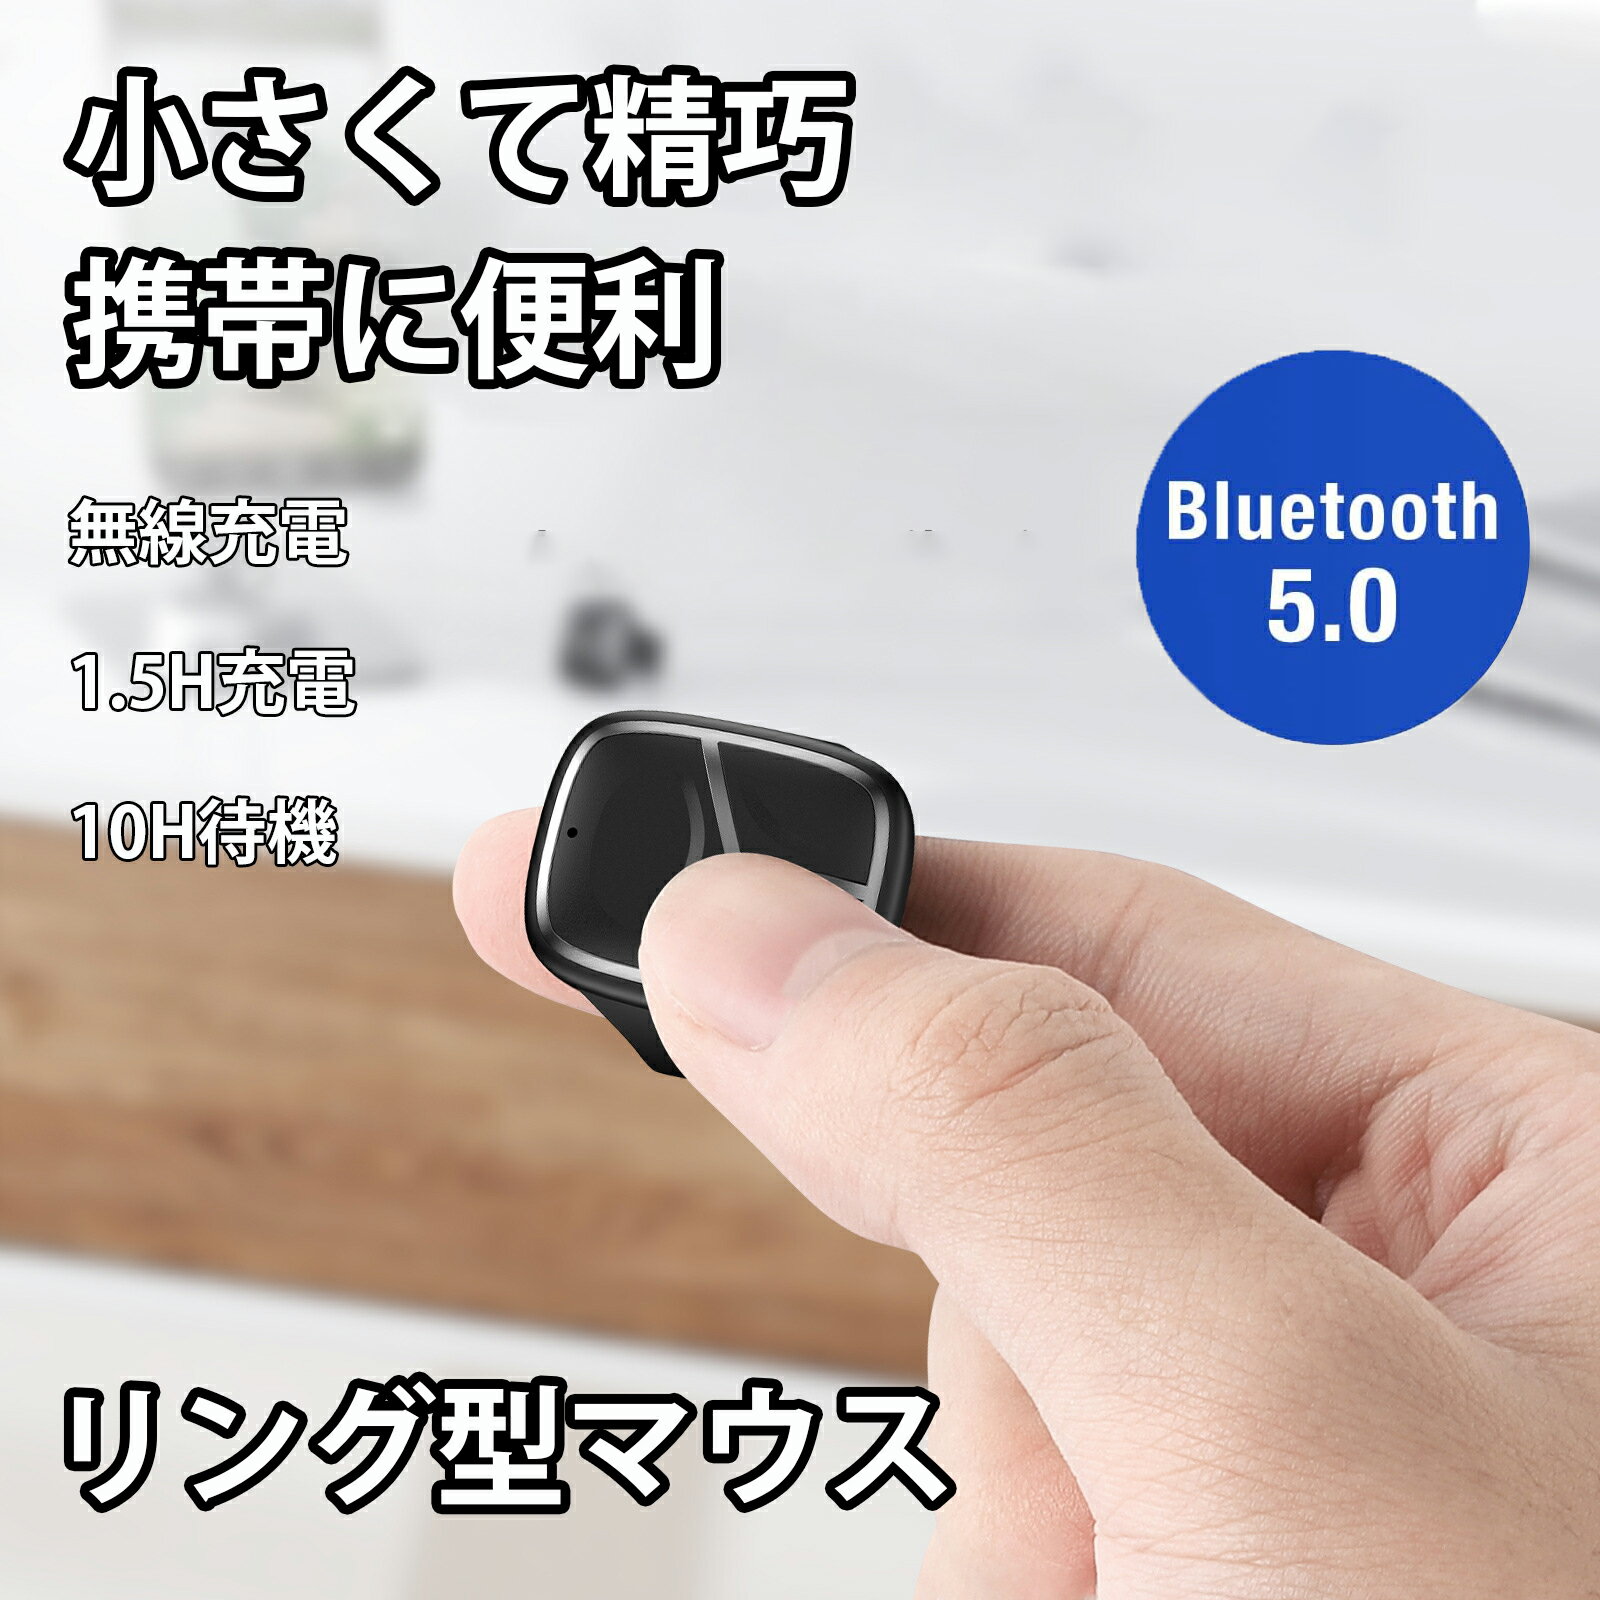 リングマウス Bluetooth フィンガーマウス 次世代マ